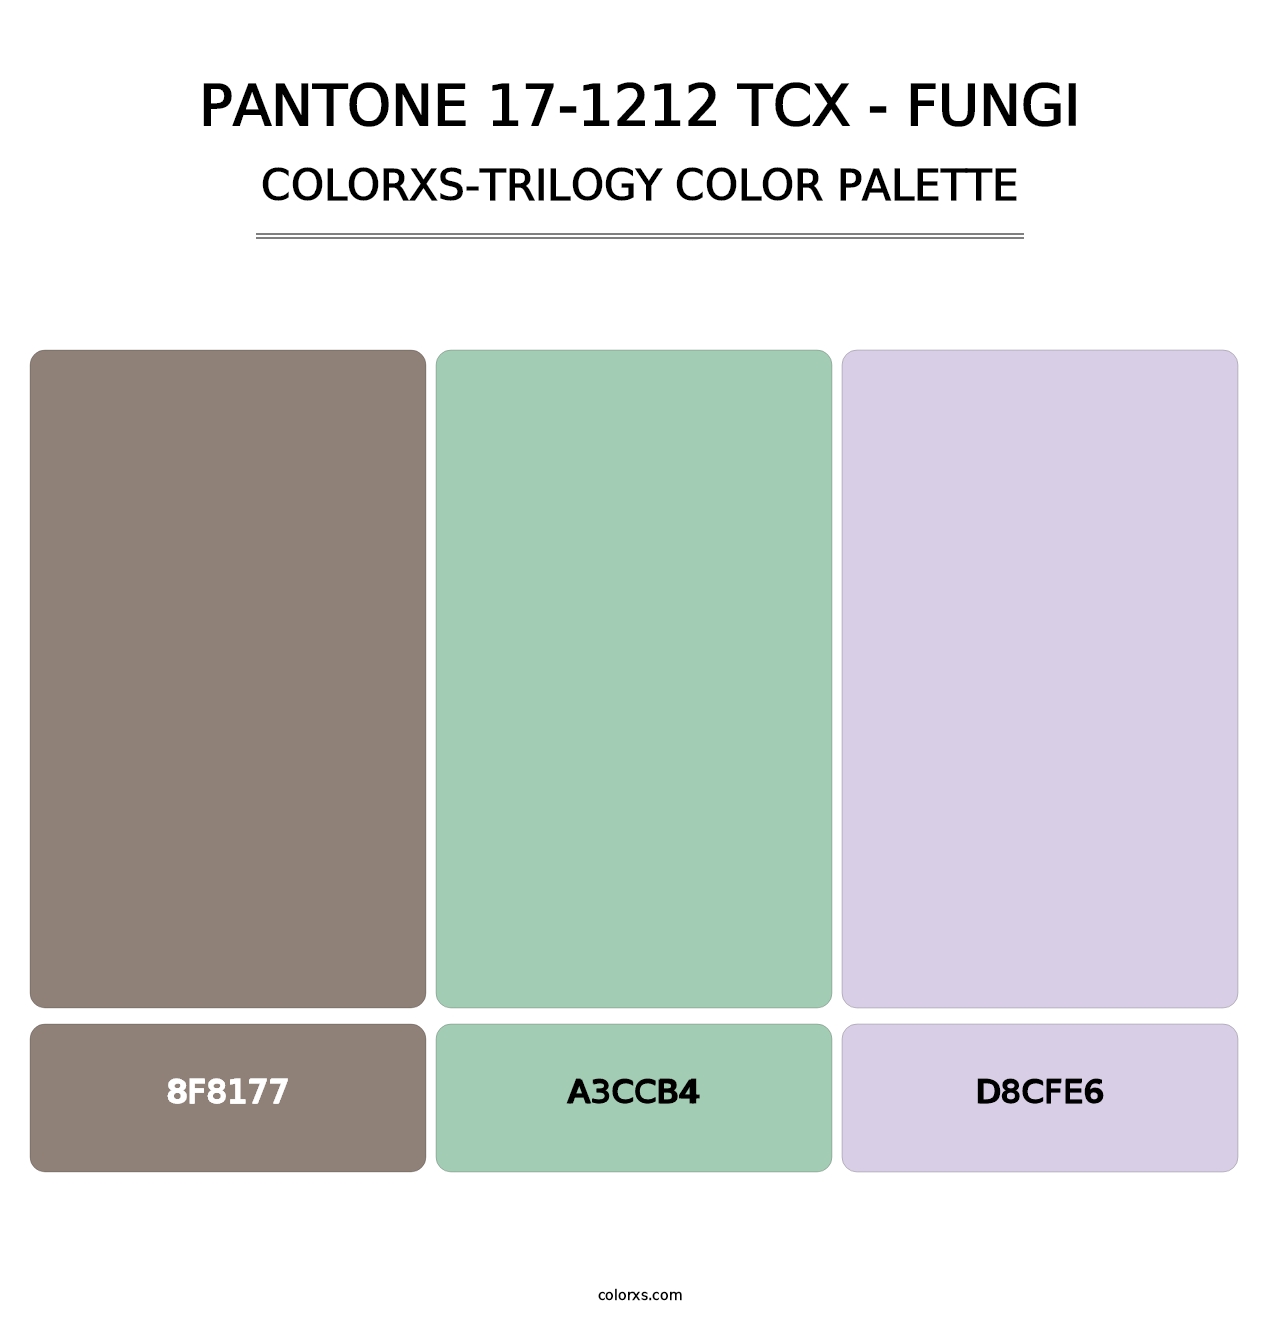 PANTONE 17-1212 TCX - Fungi - Colorxs Trilogy Palette